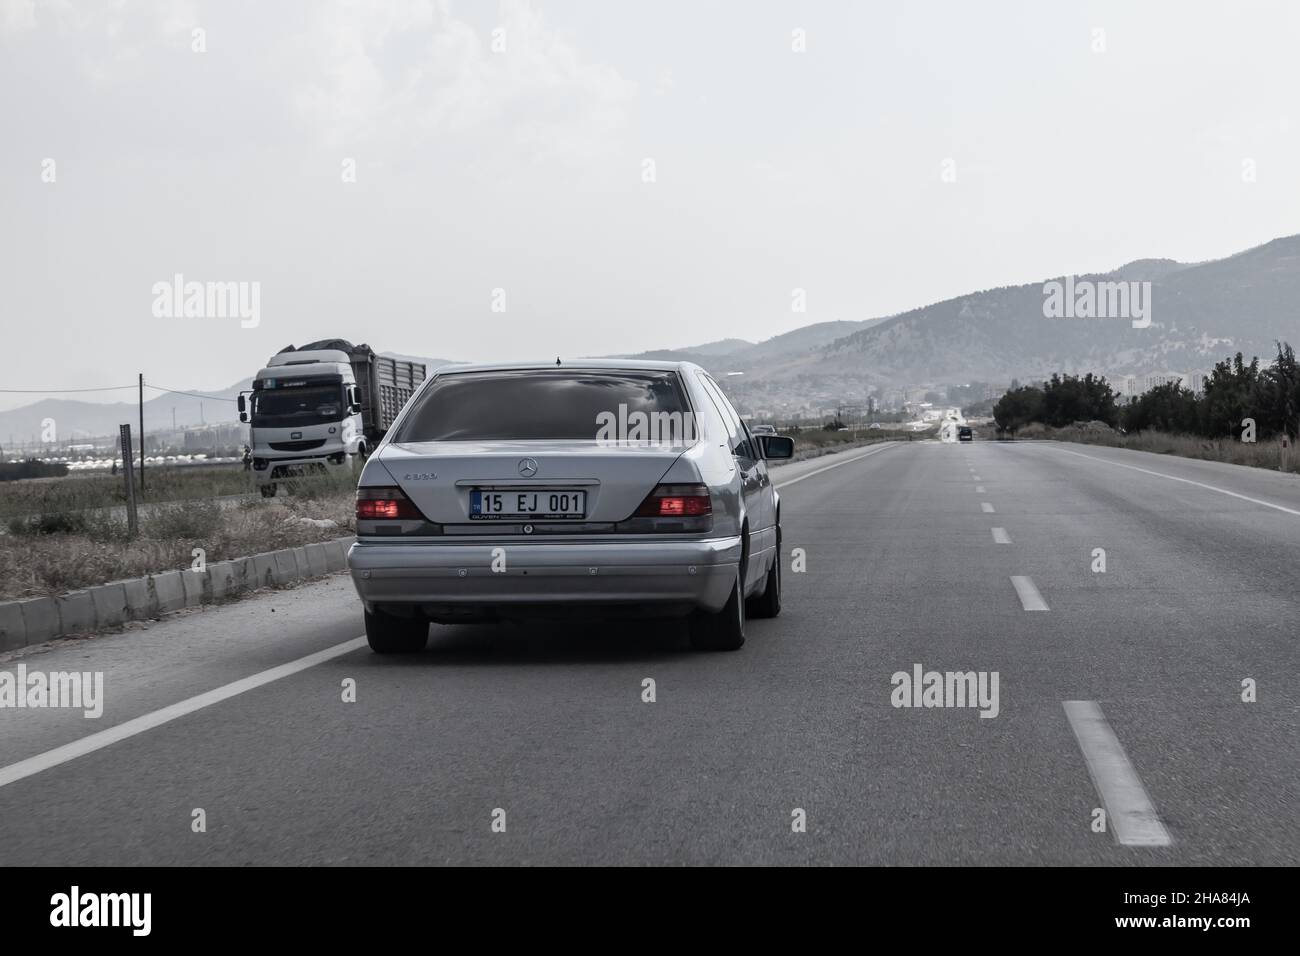 Antalya, Turchia - 08. 28. 2021: La leggendaria auto di lusso nel segmento premium, l'argento Mercedes-Benz W140 S-Class S600, corre sull'autostrada in T. Foto Stock